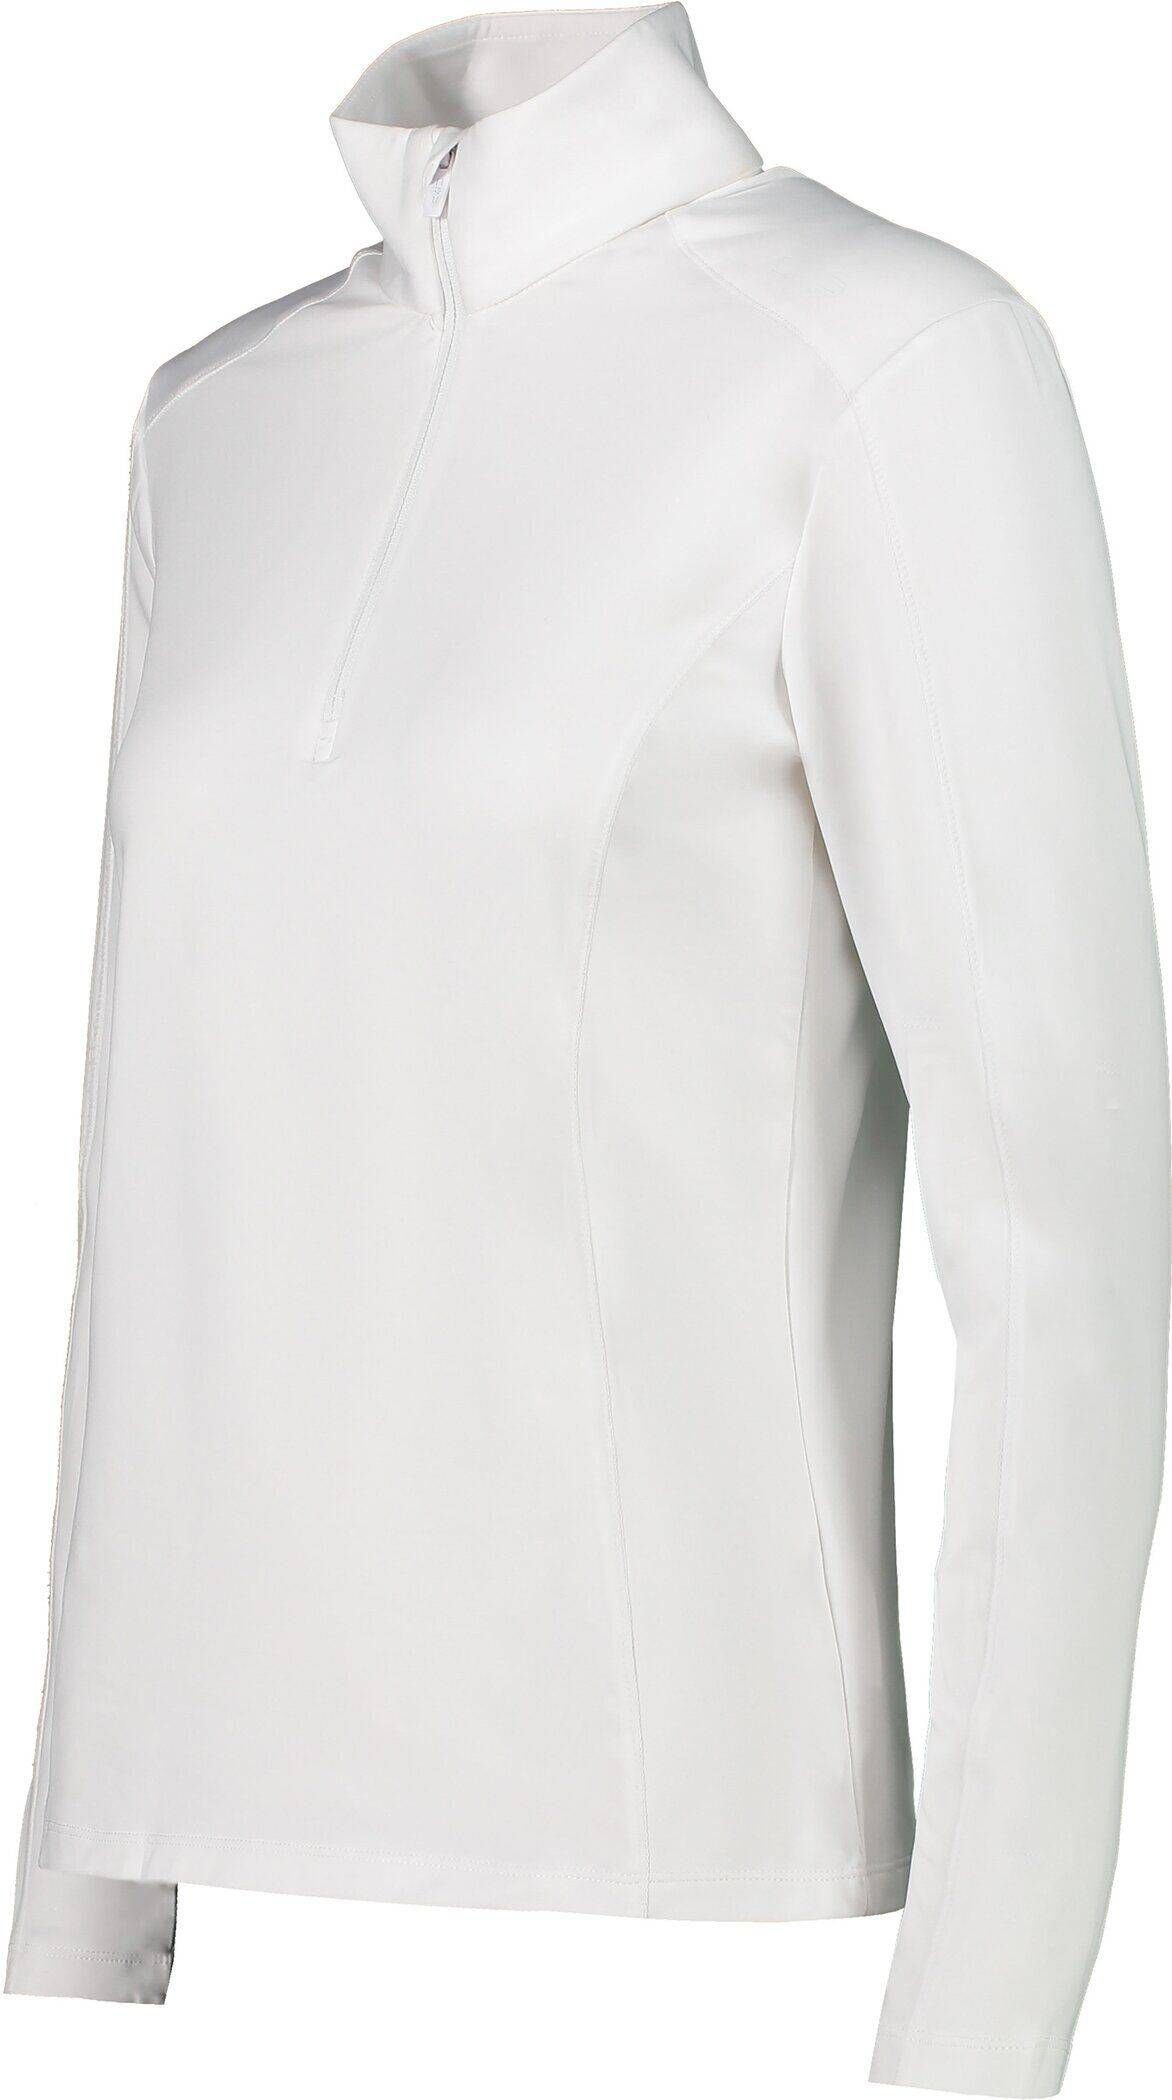 (100) Damen CMP weiß Sweatshirt Trainingsjacke